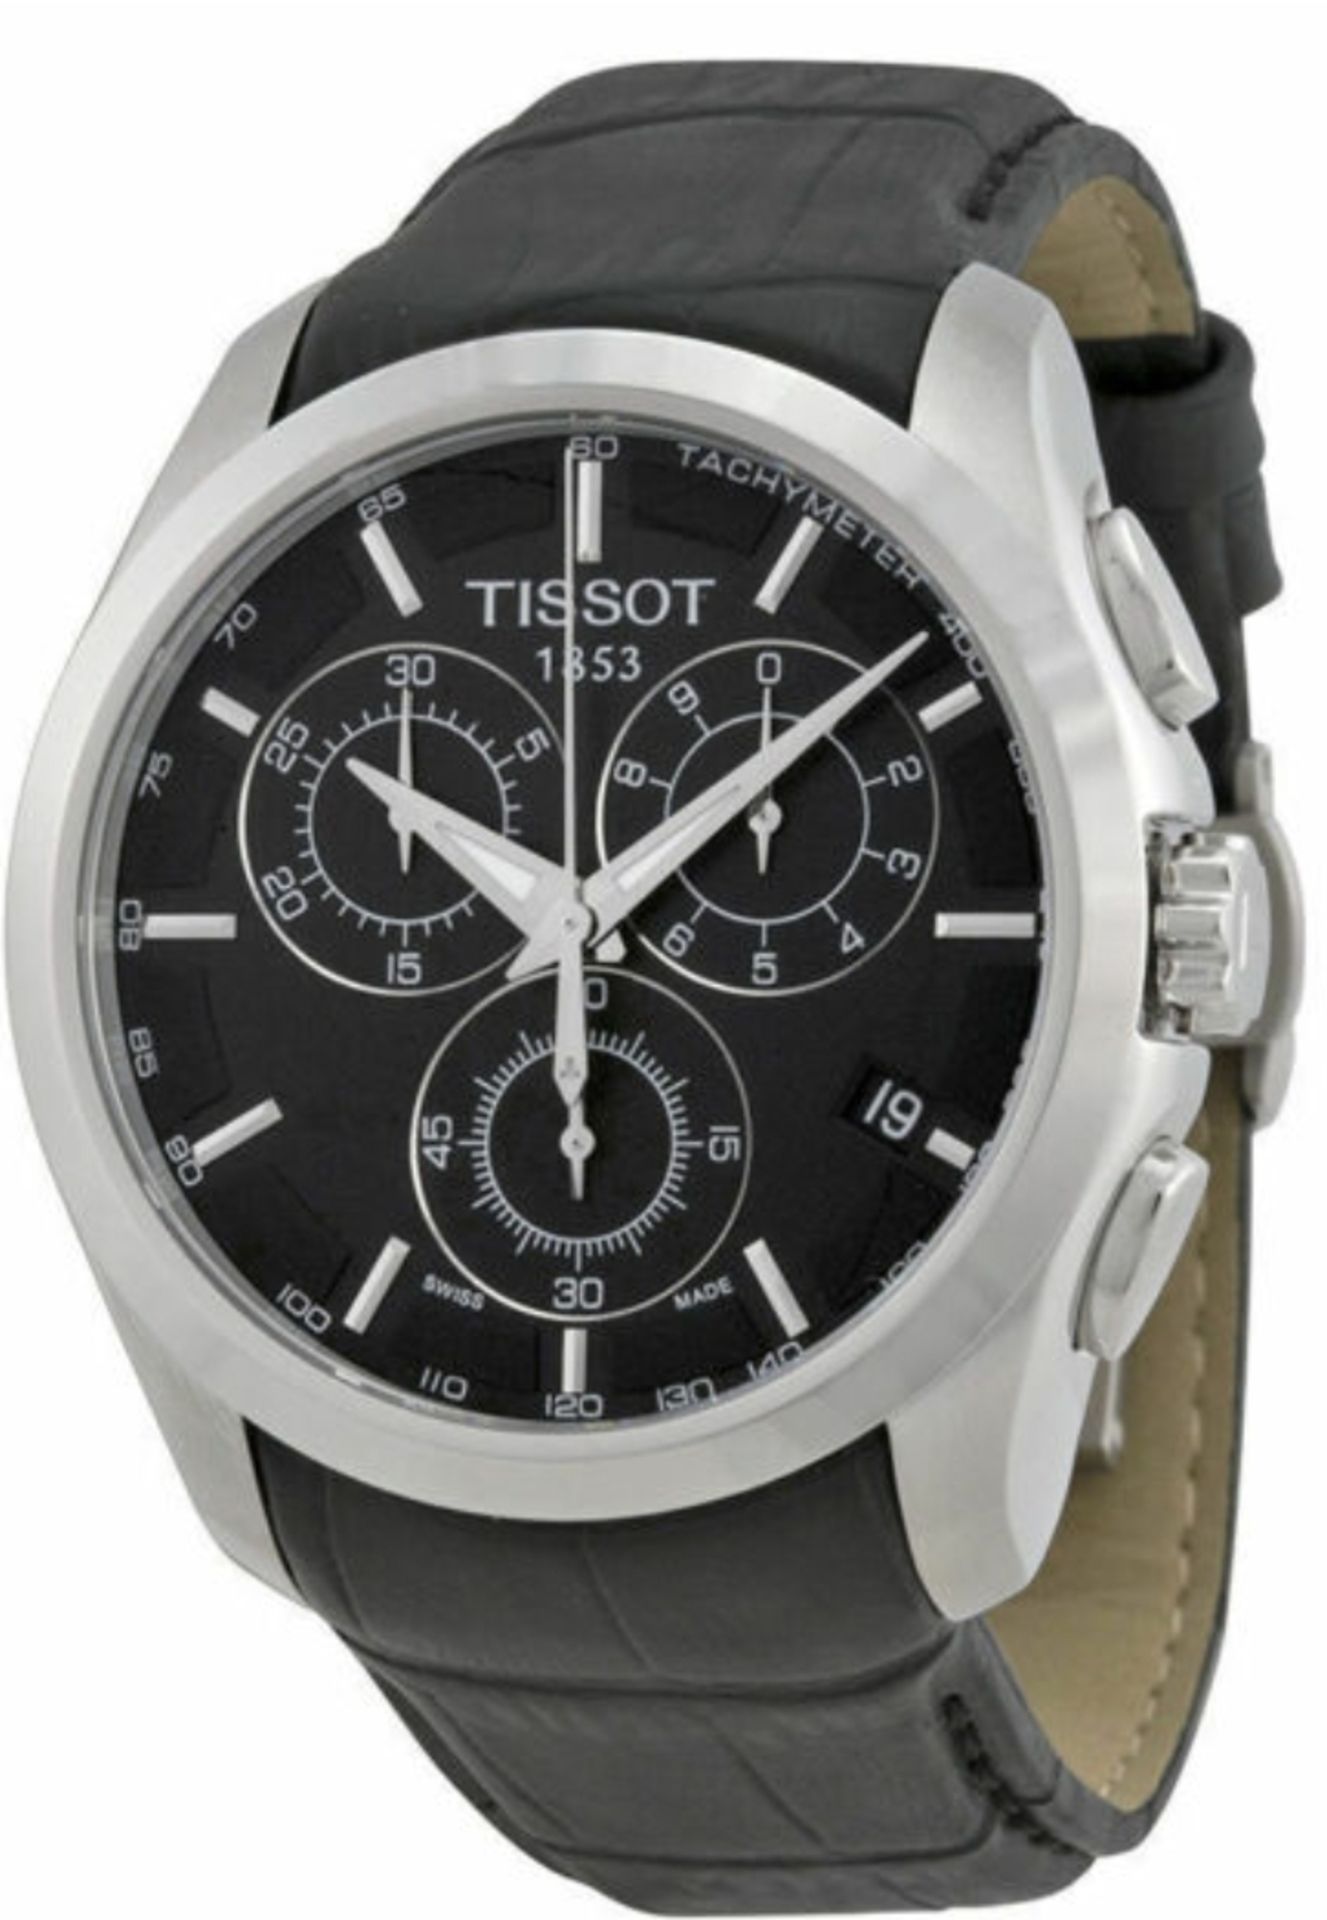 TISSOT Men's Couturier Quartz Chronograph Watch - Image 3 of 4